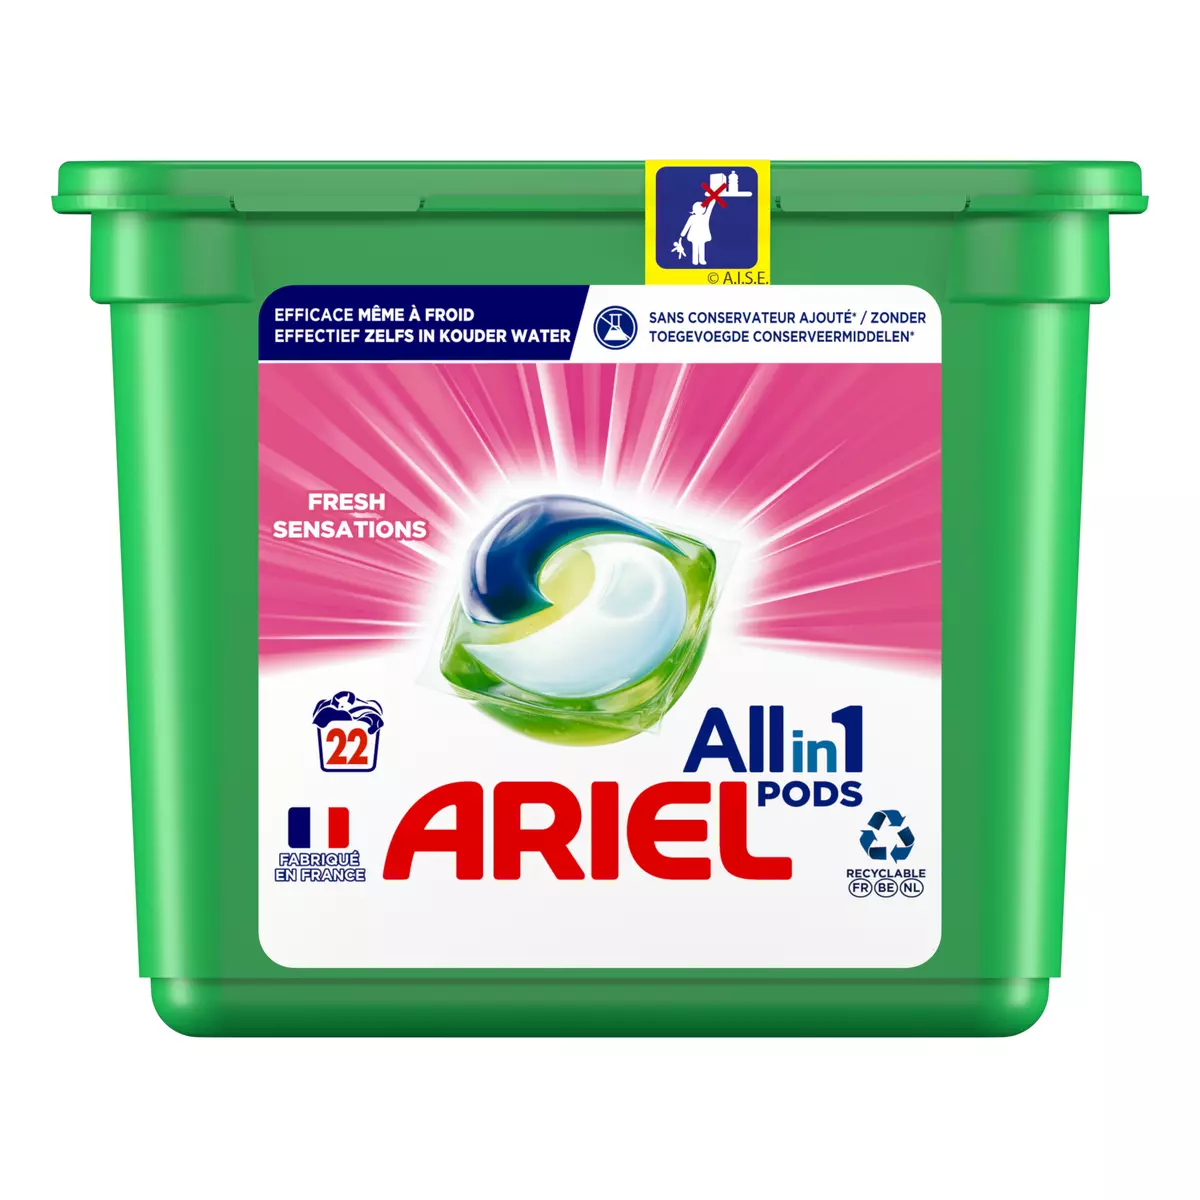 Ariel All-in-1 PODS, Lessive Liquide En Capsules…